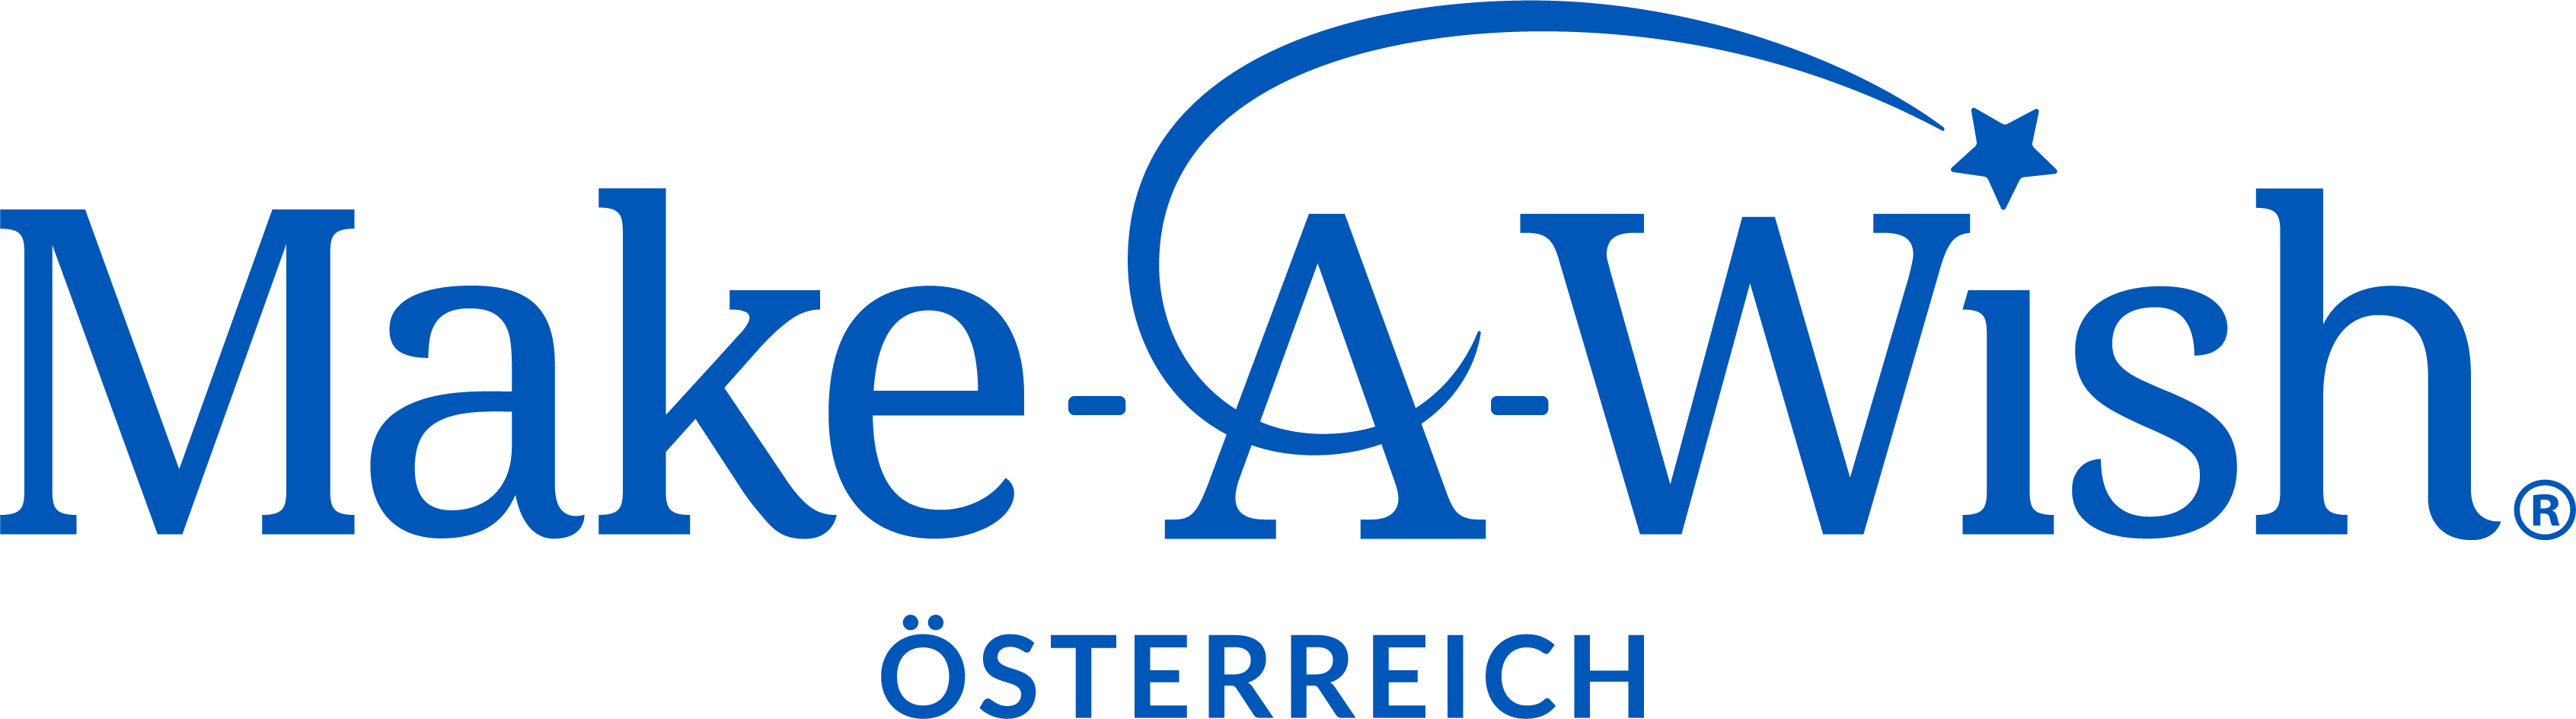 Logo Make-A-Wish Foundation Österreich